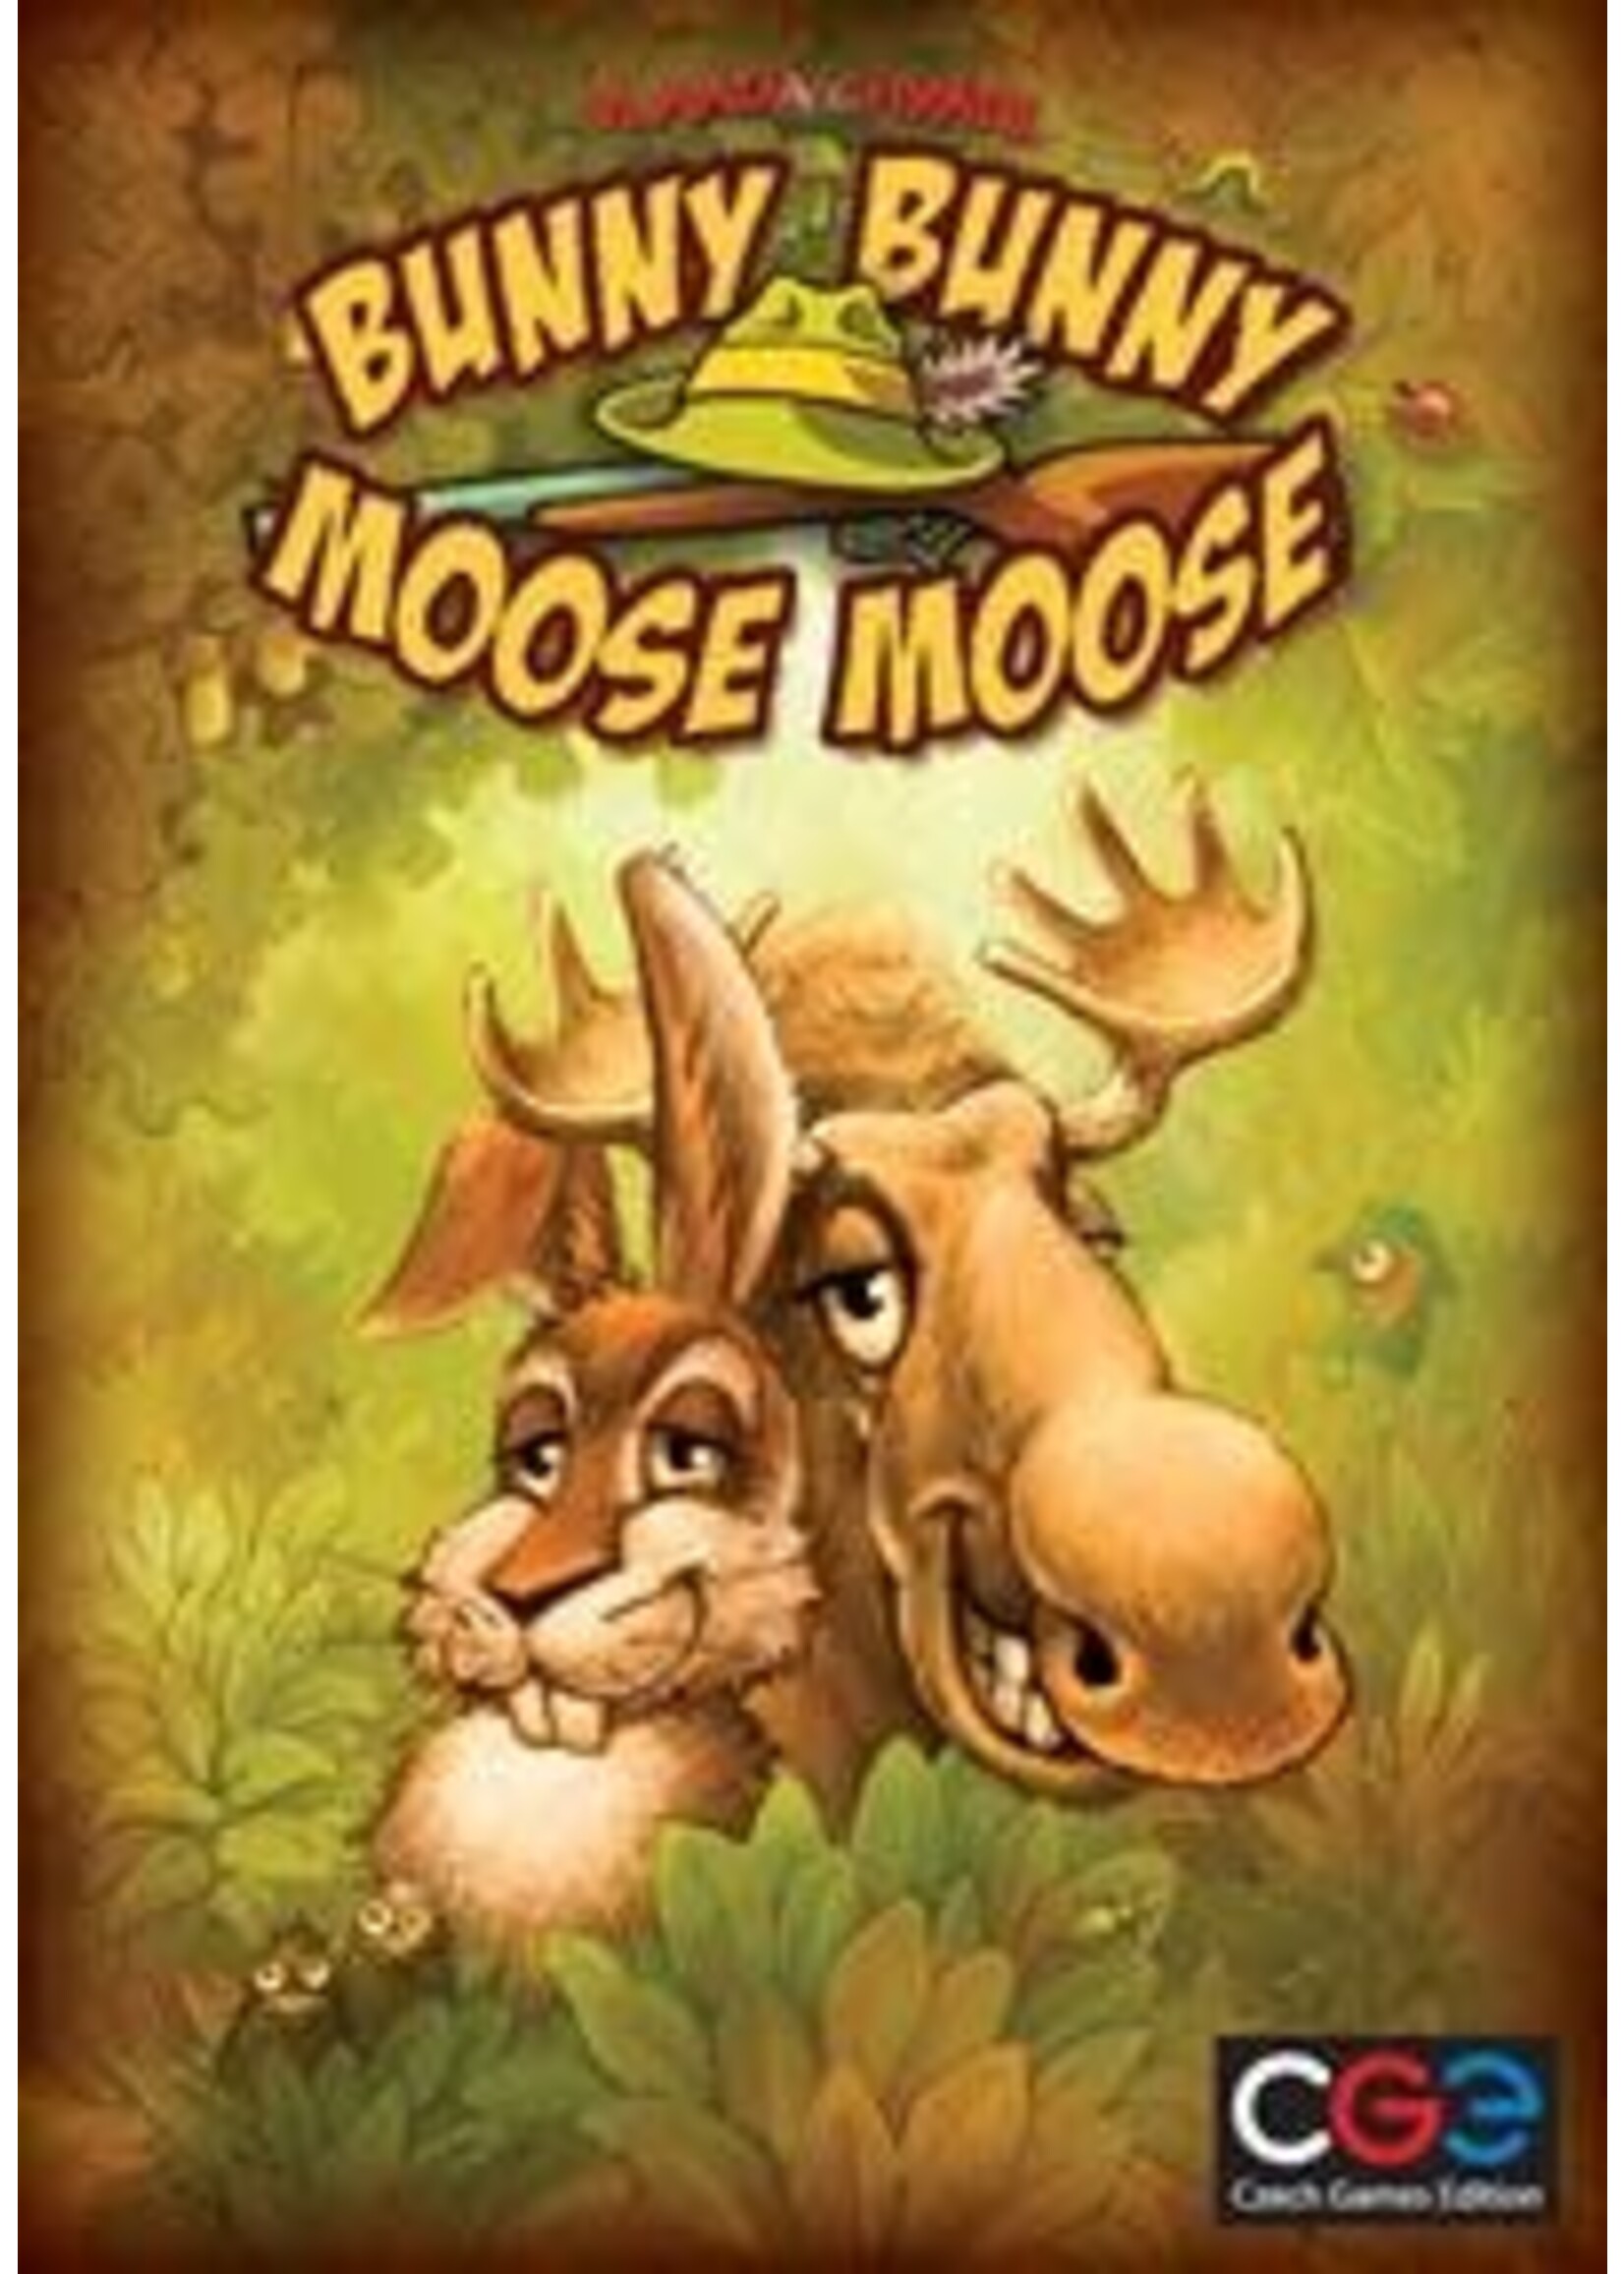 Rental RENTAL - Bunny Bunny Moose Moose 0lbs 15.7oz